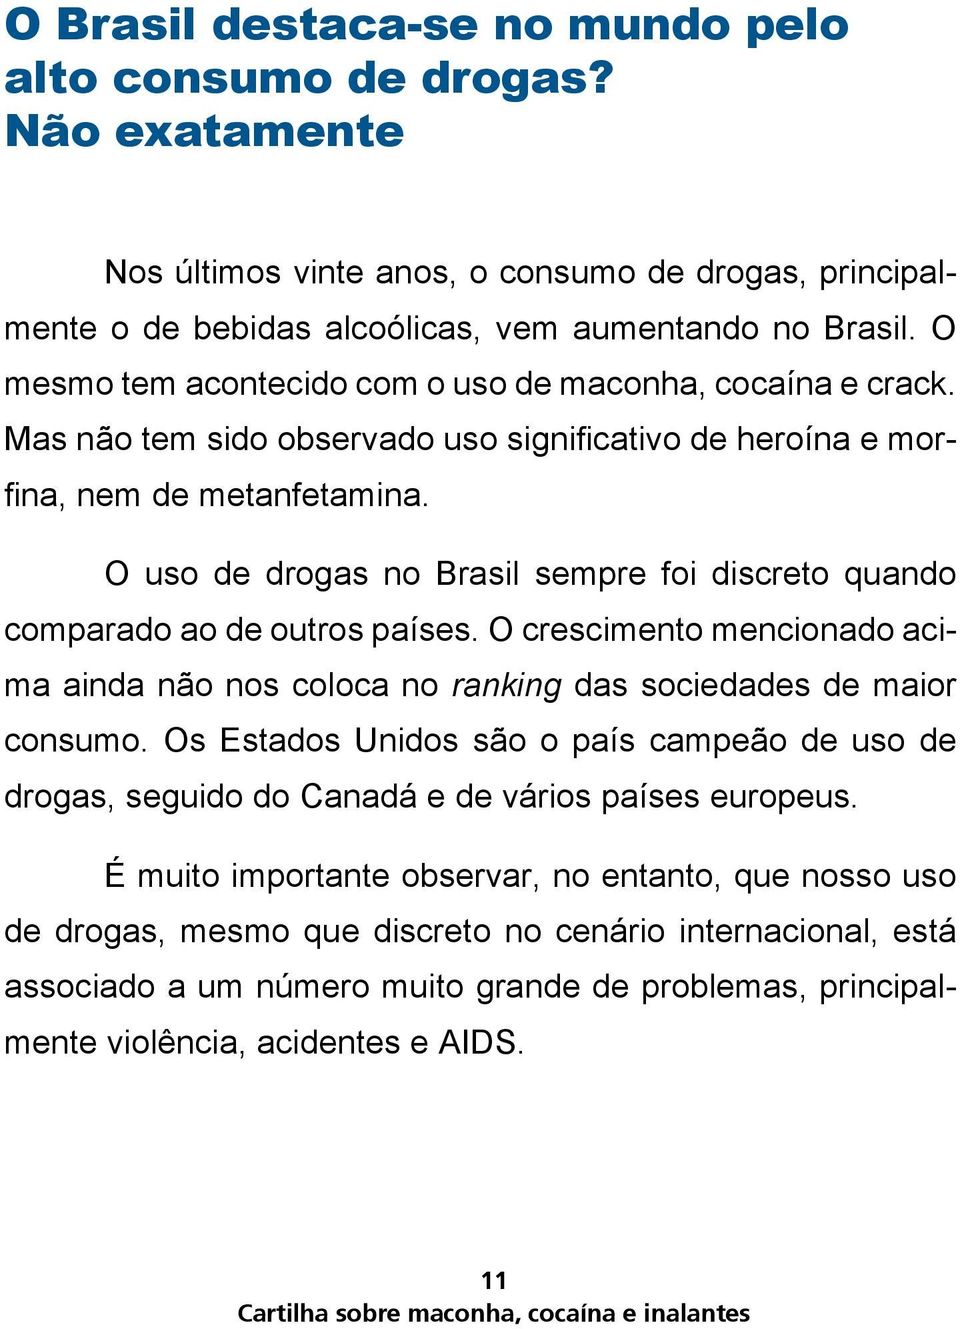 O uso de drogas no Brasil sempre foi discreto quando comparado ao de outros países. O crescimento mencionado acima ainda não nos coloca no ranking das sociedades de maior consumo.